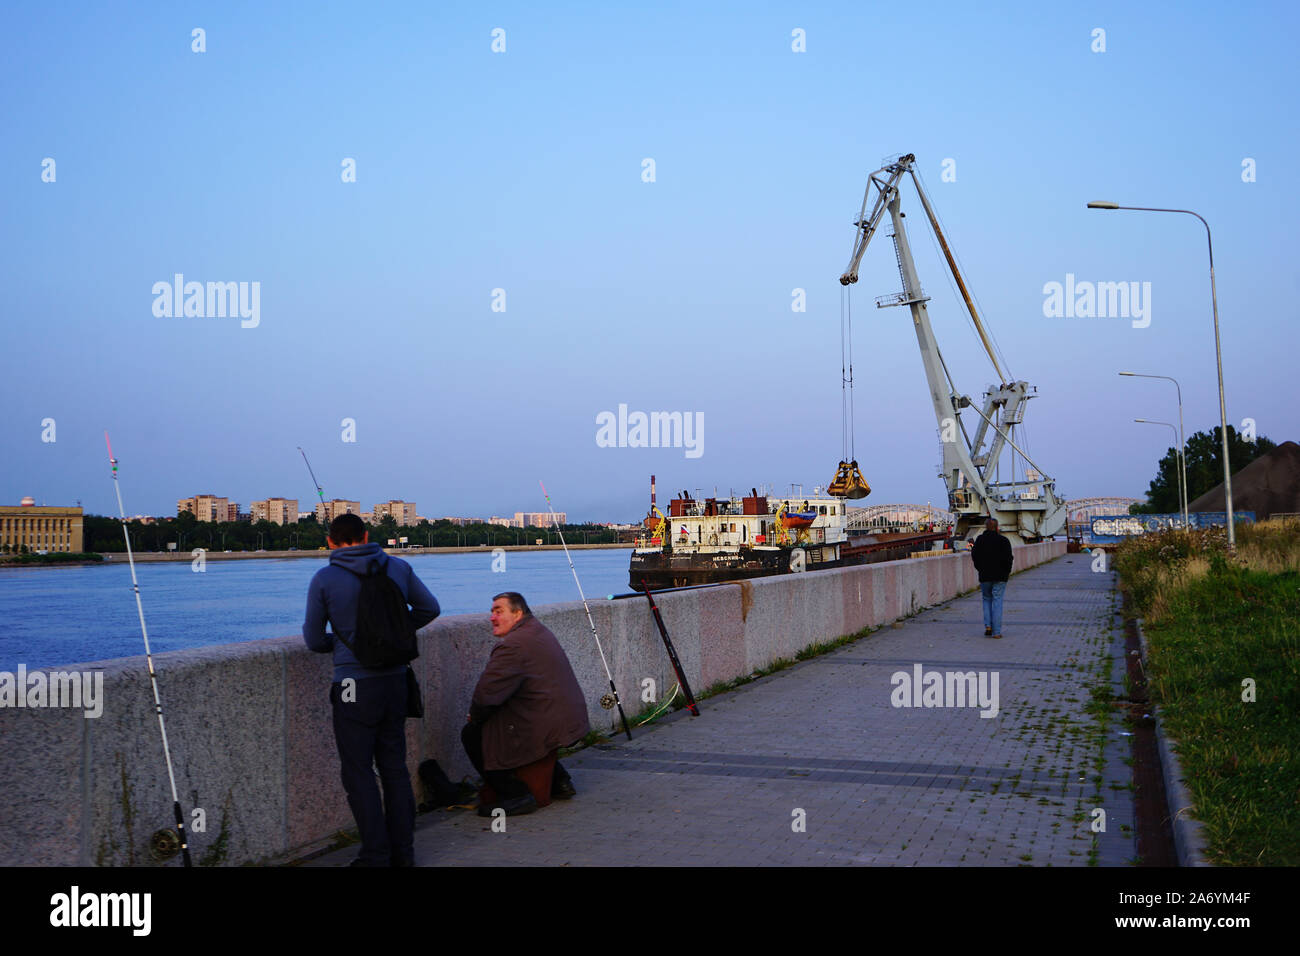 Zwei Angler am Ufer der Newa, hinten Entladen von Kohle von einem Flussfrachter, Ufer der Newa, Sankt Petersburg, Russland Stock Photo